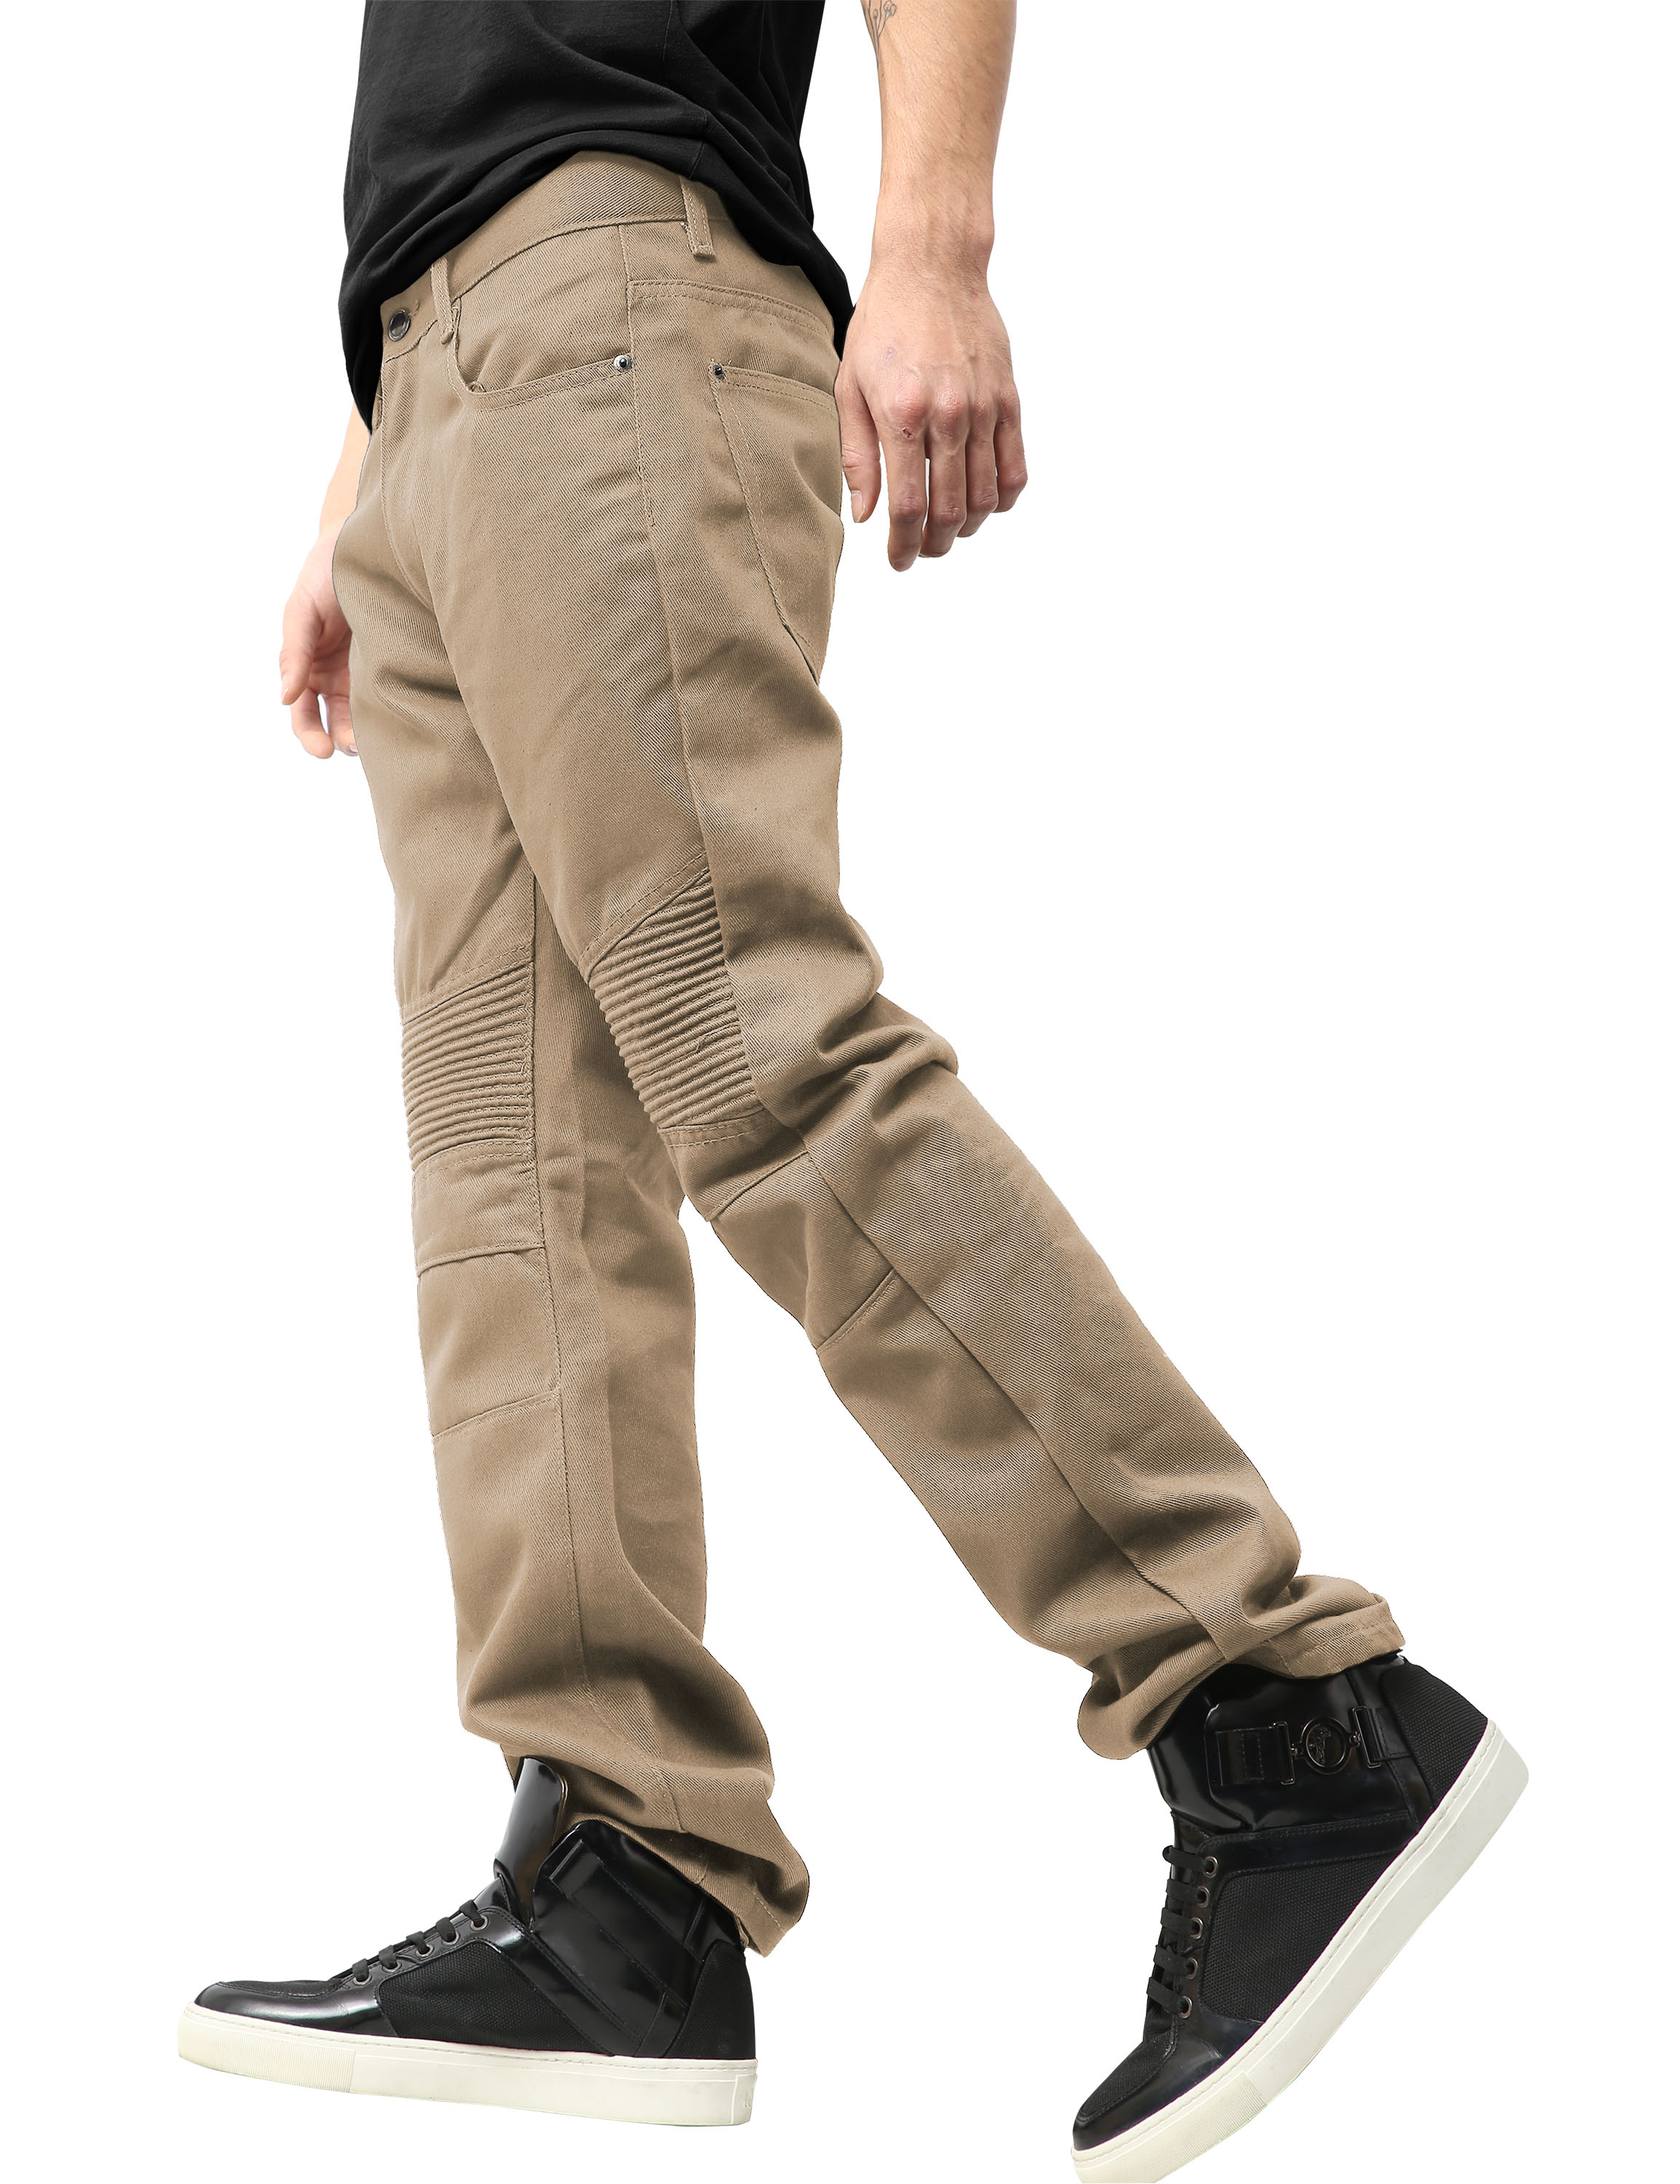 Ma Croix Mens Biker Jeans Slim Straight Fit Denim Distressed Zipper Pants - image 5 of 7